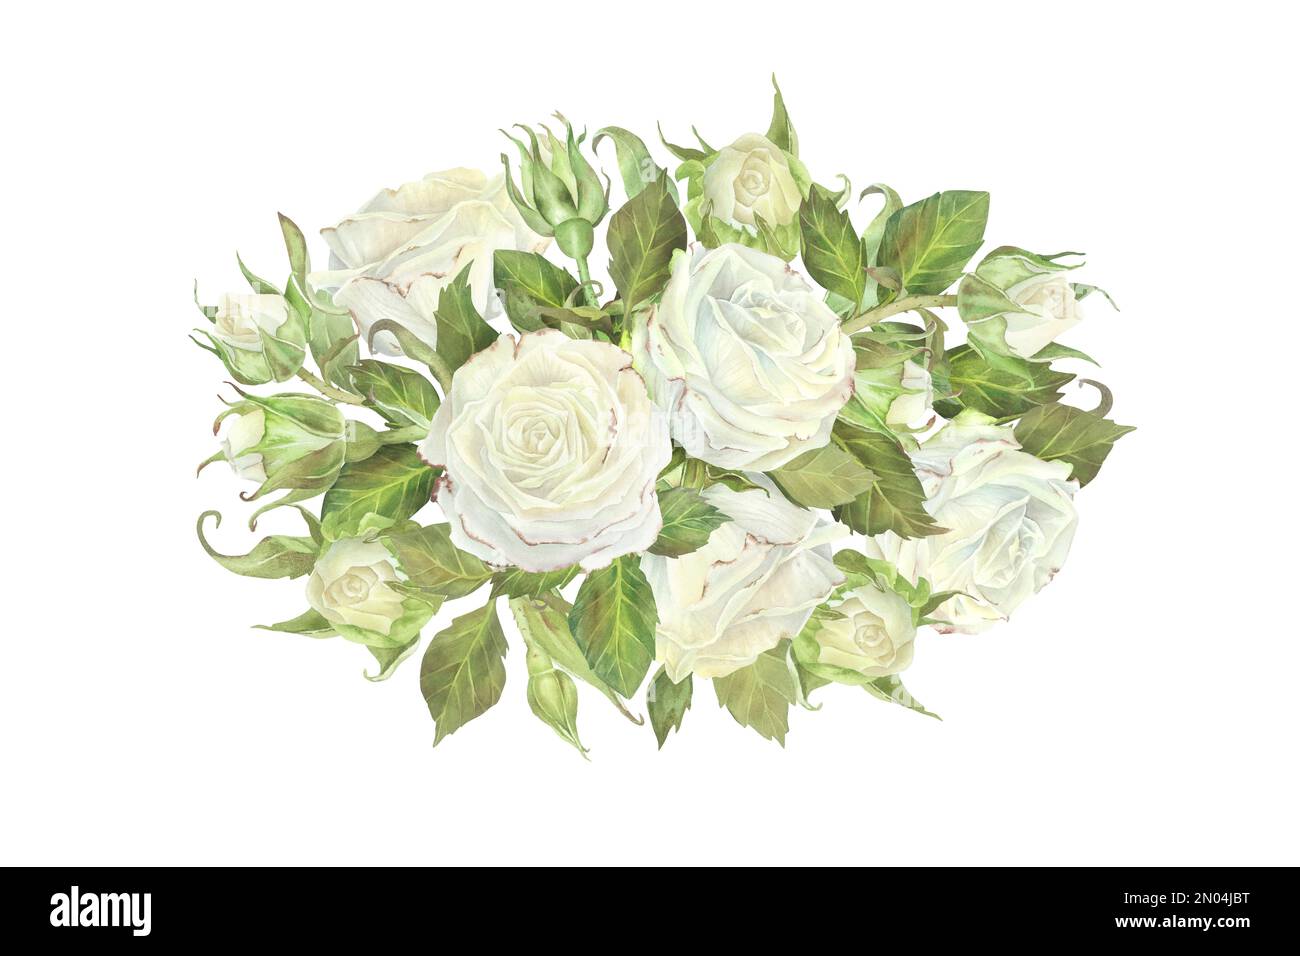 Composizione ovale di rose bianche, gemme e foglie. Illustrazione acquerello. Isolato su sfondo bianco. Per la progettazione di adesivi, piatti, auto di benvenuto Foto Stock